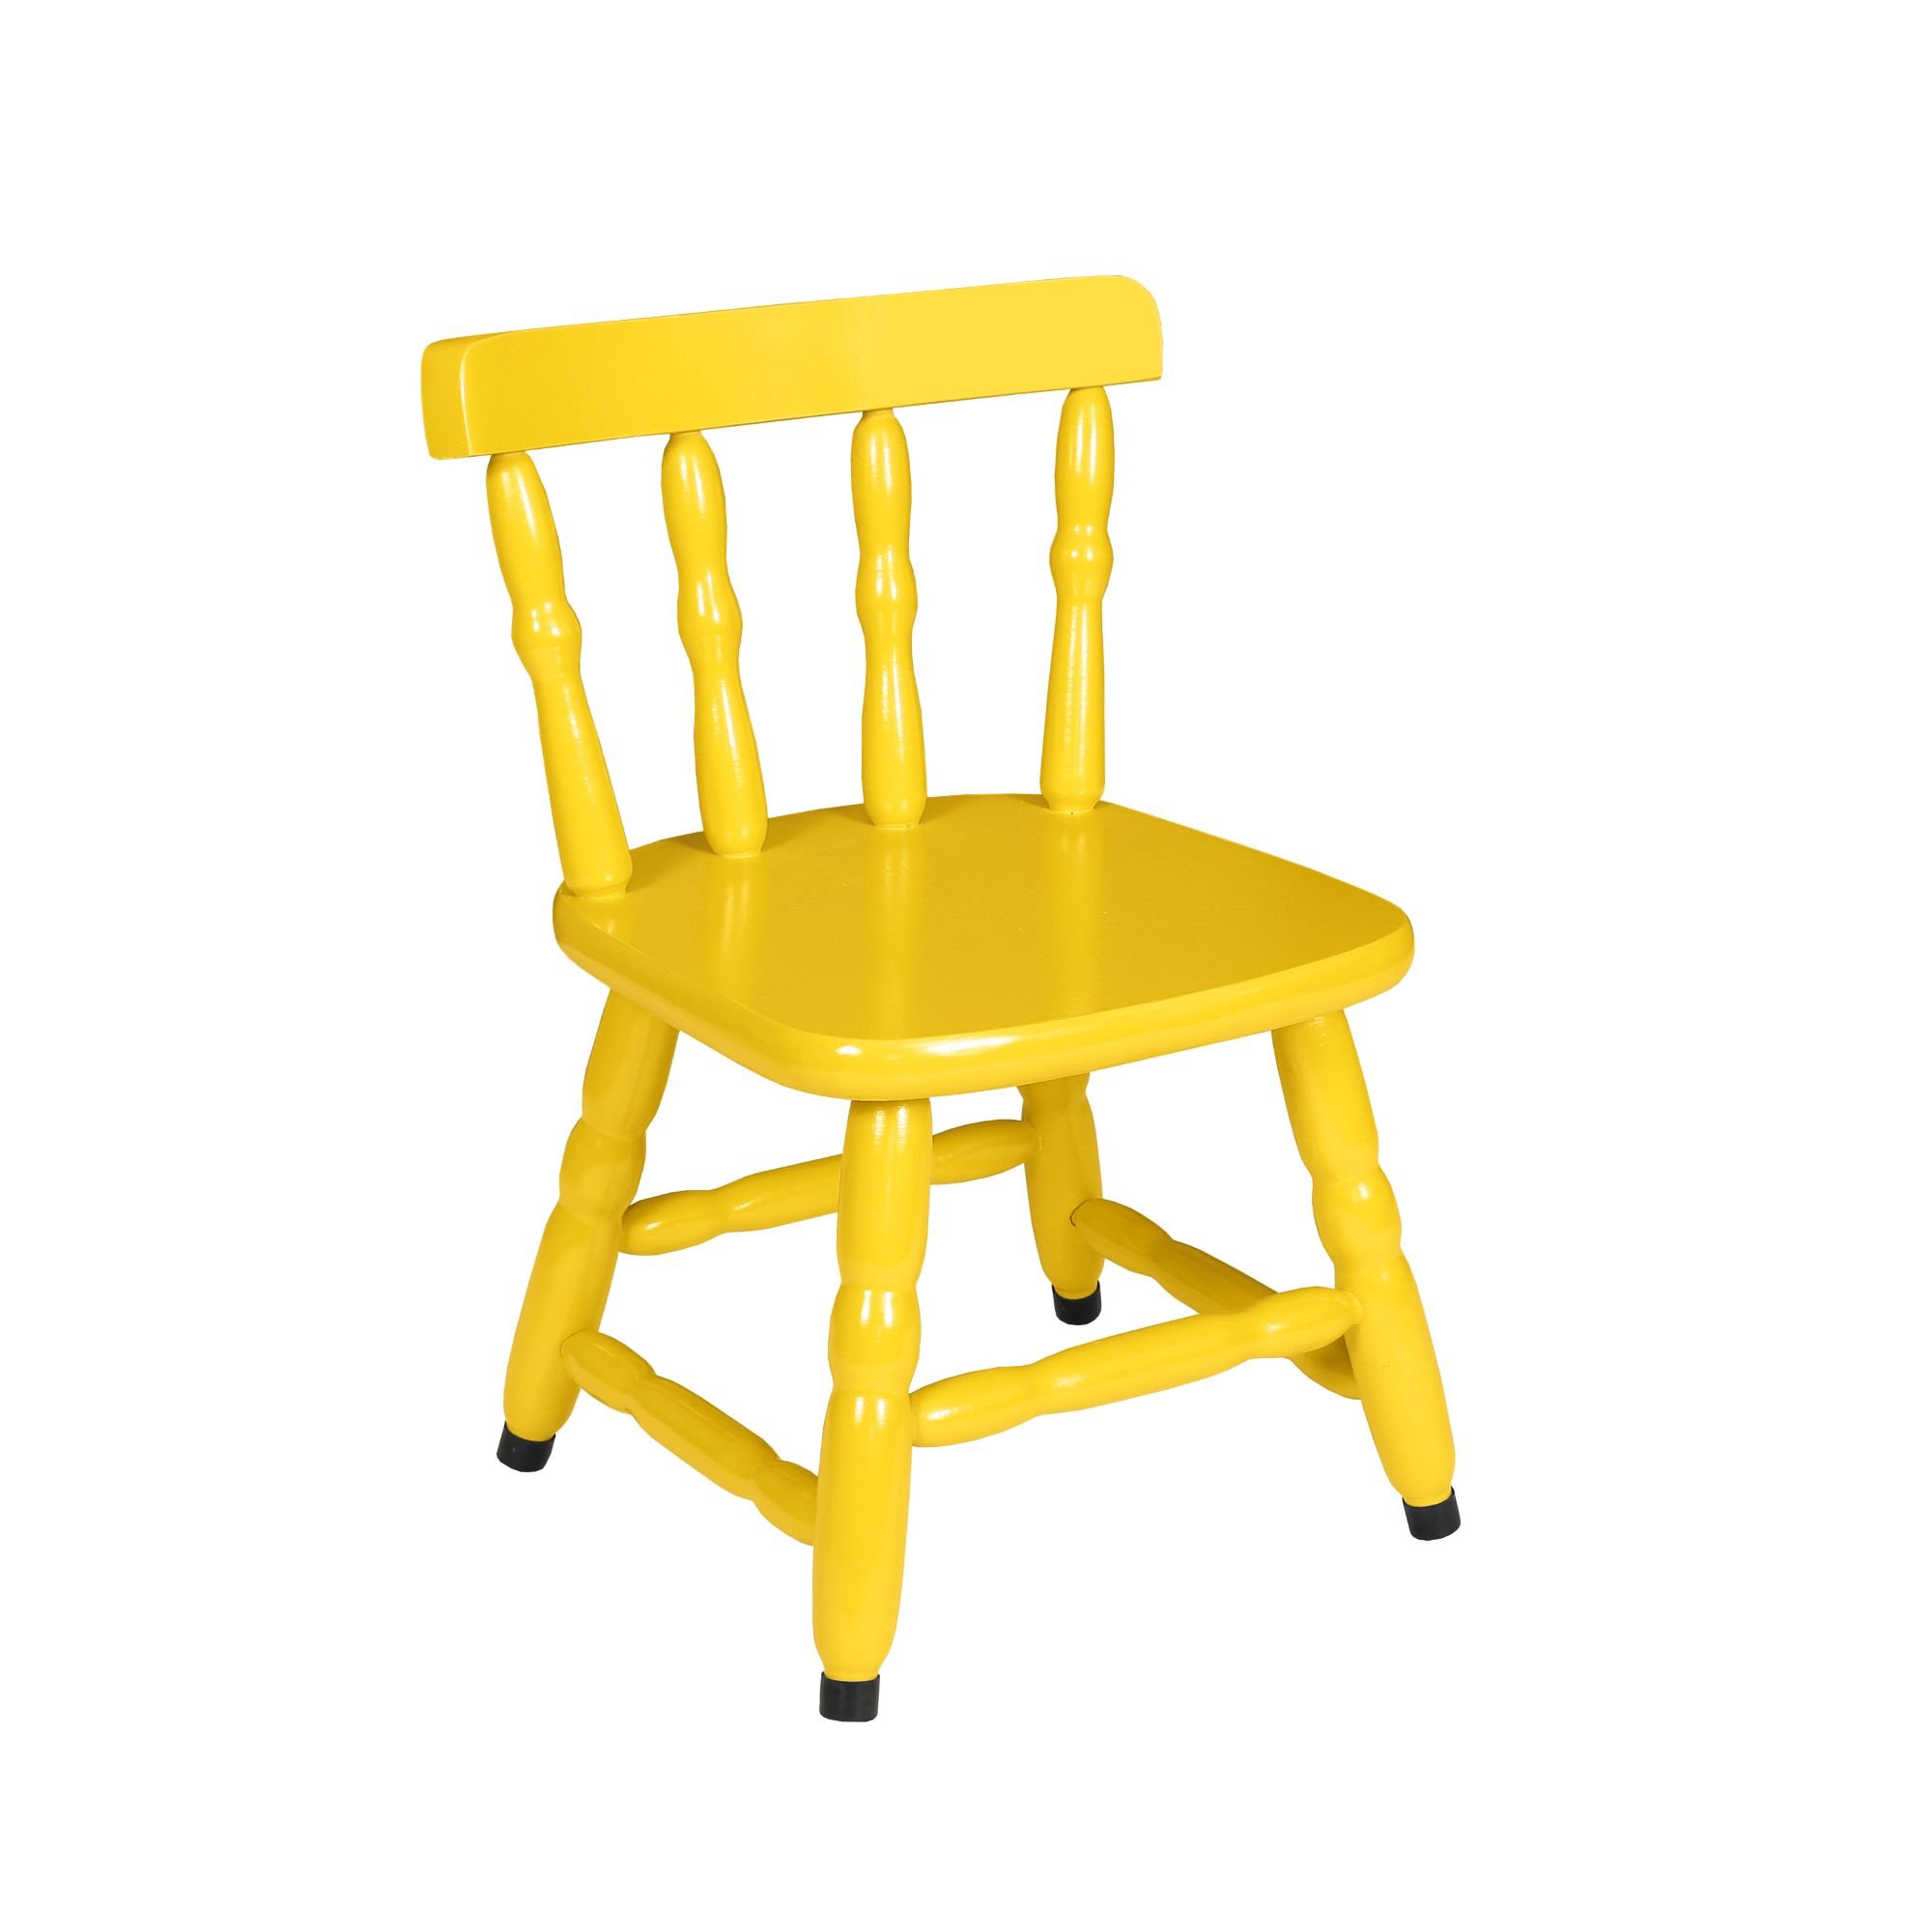 1 Cadeira Infantil Scholl Coloridas - Amarelo